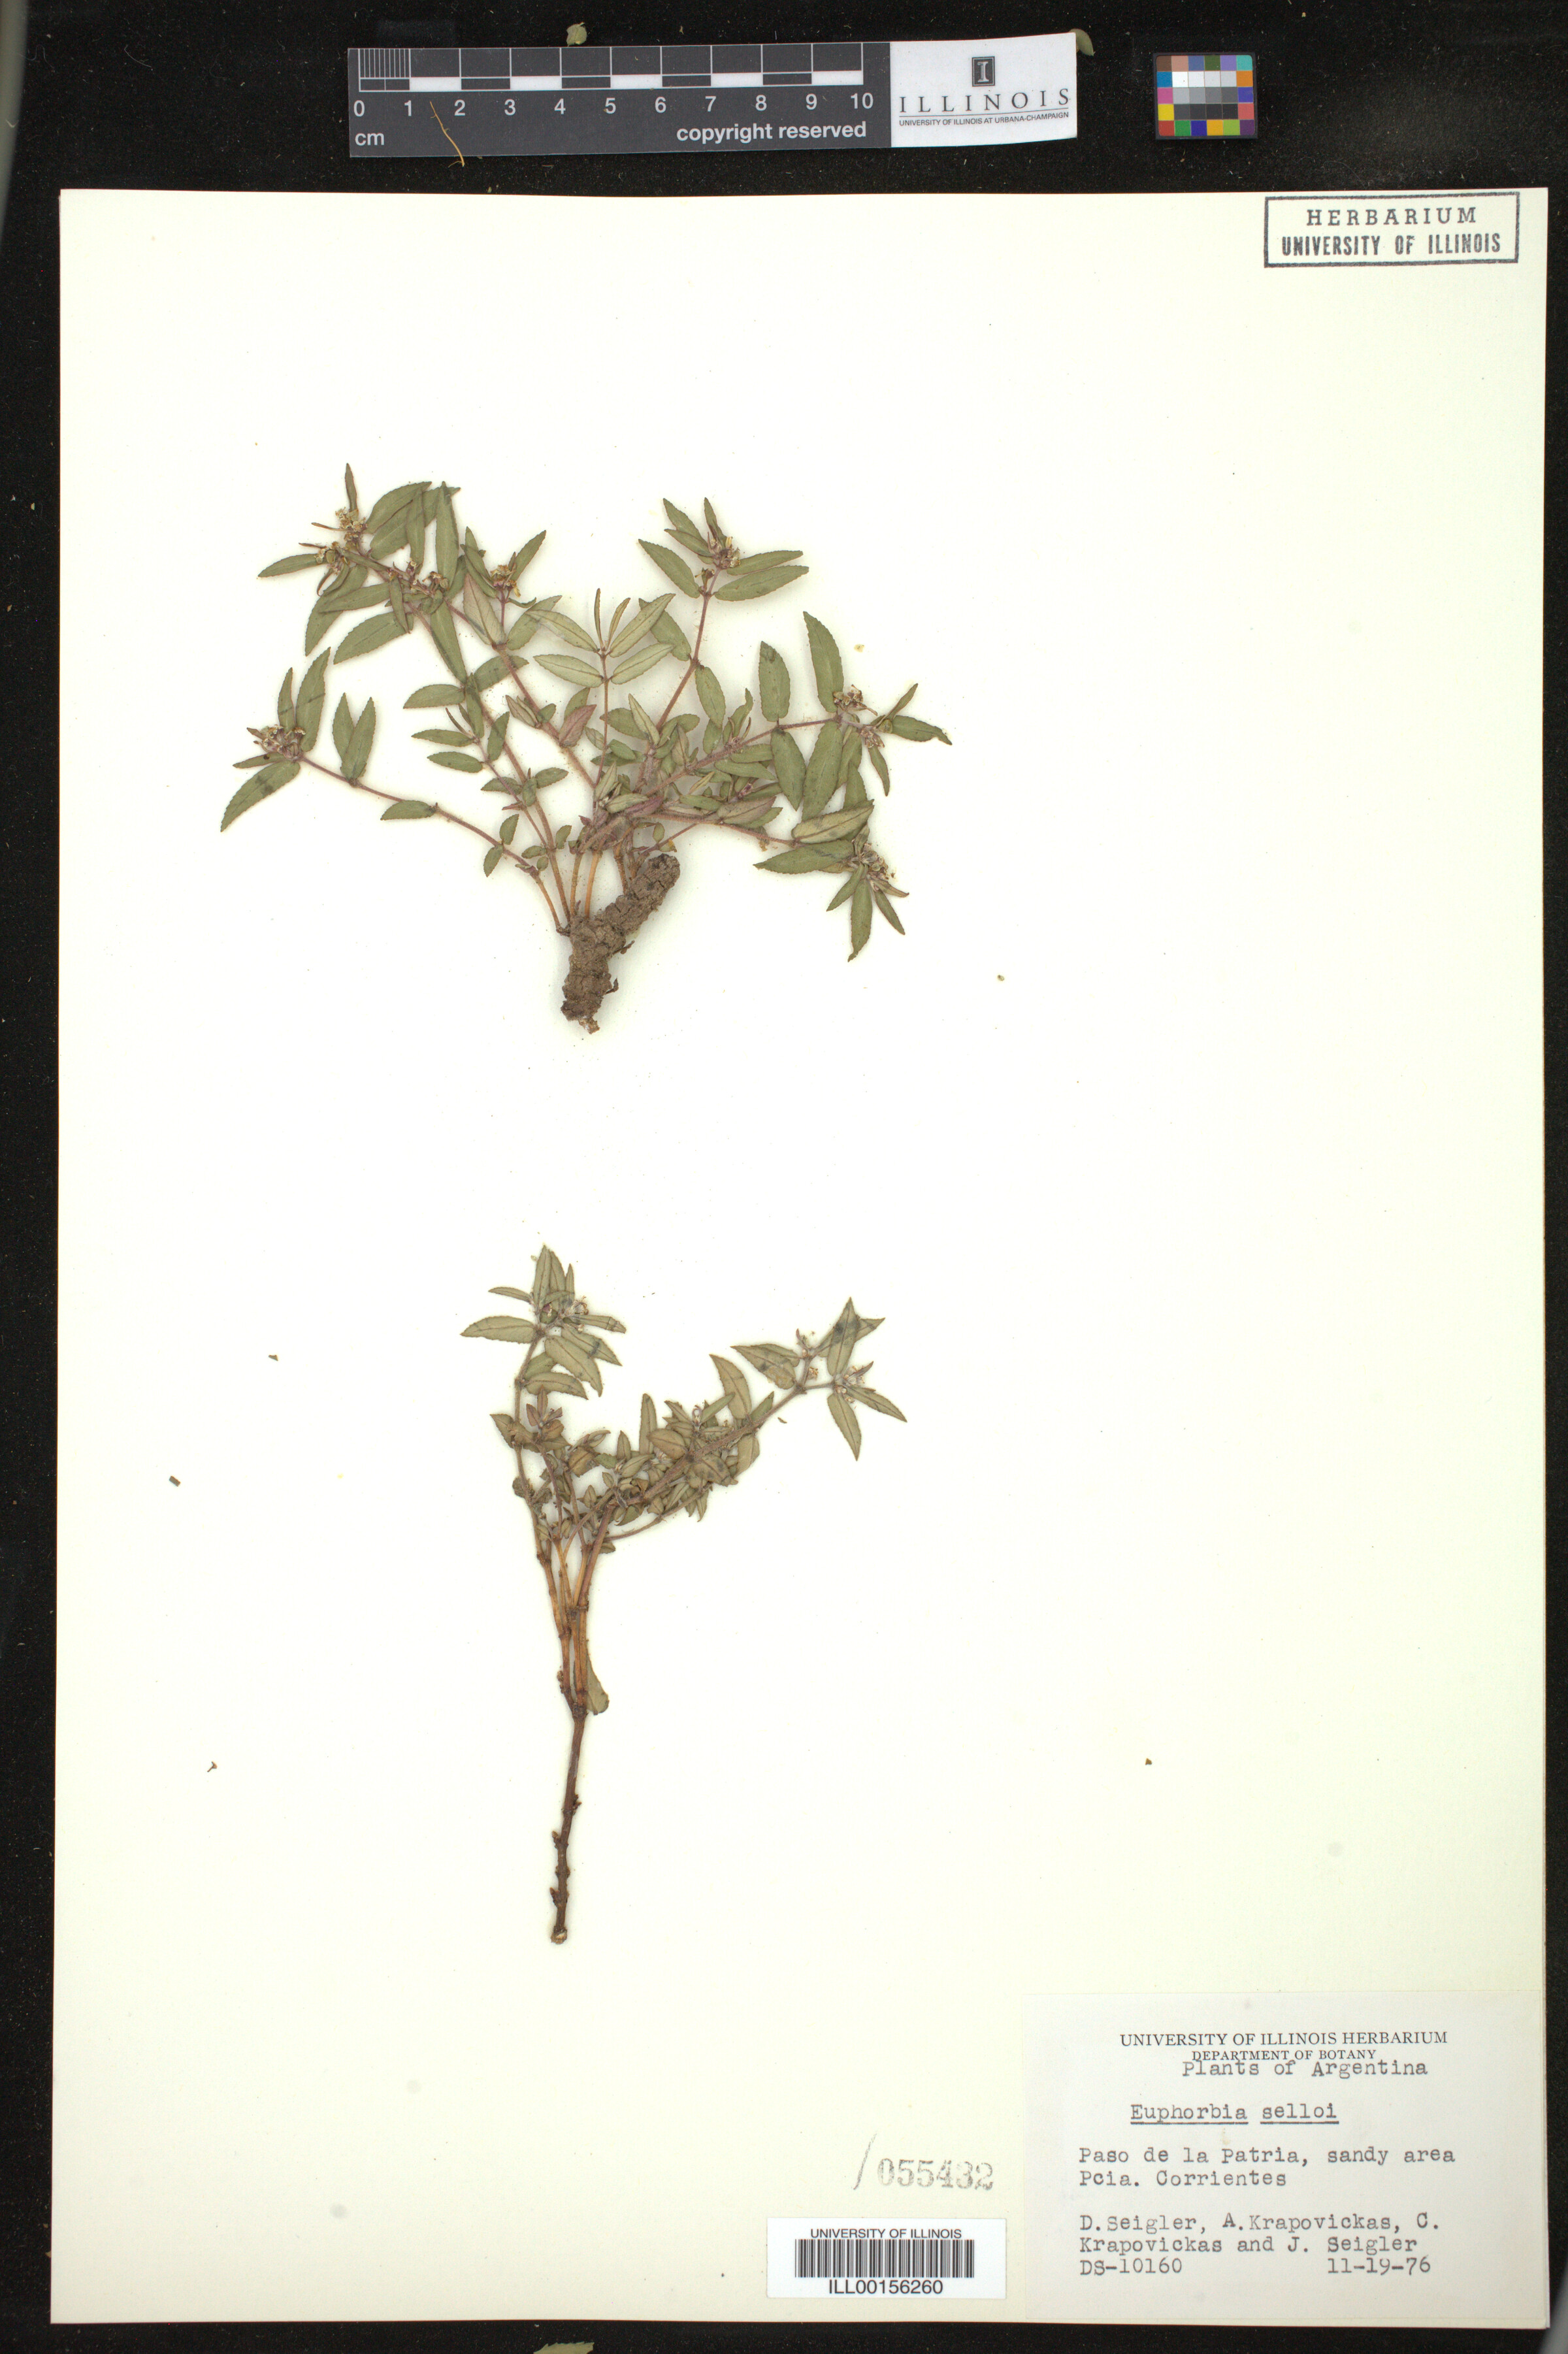 Euphorbia selloi image